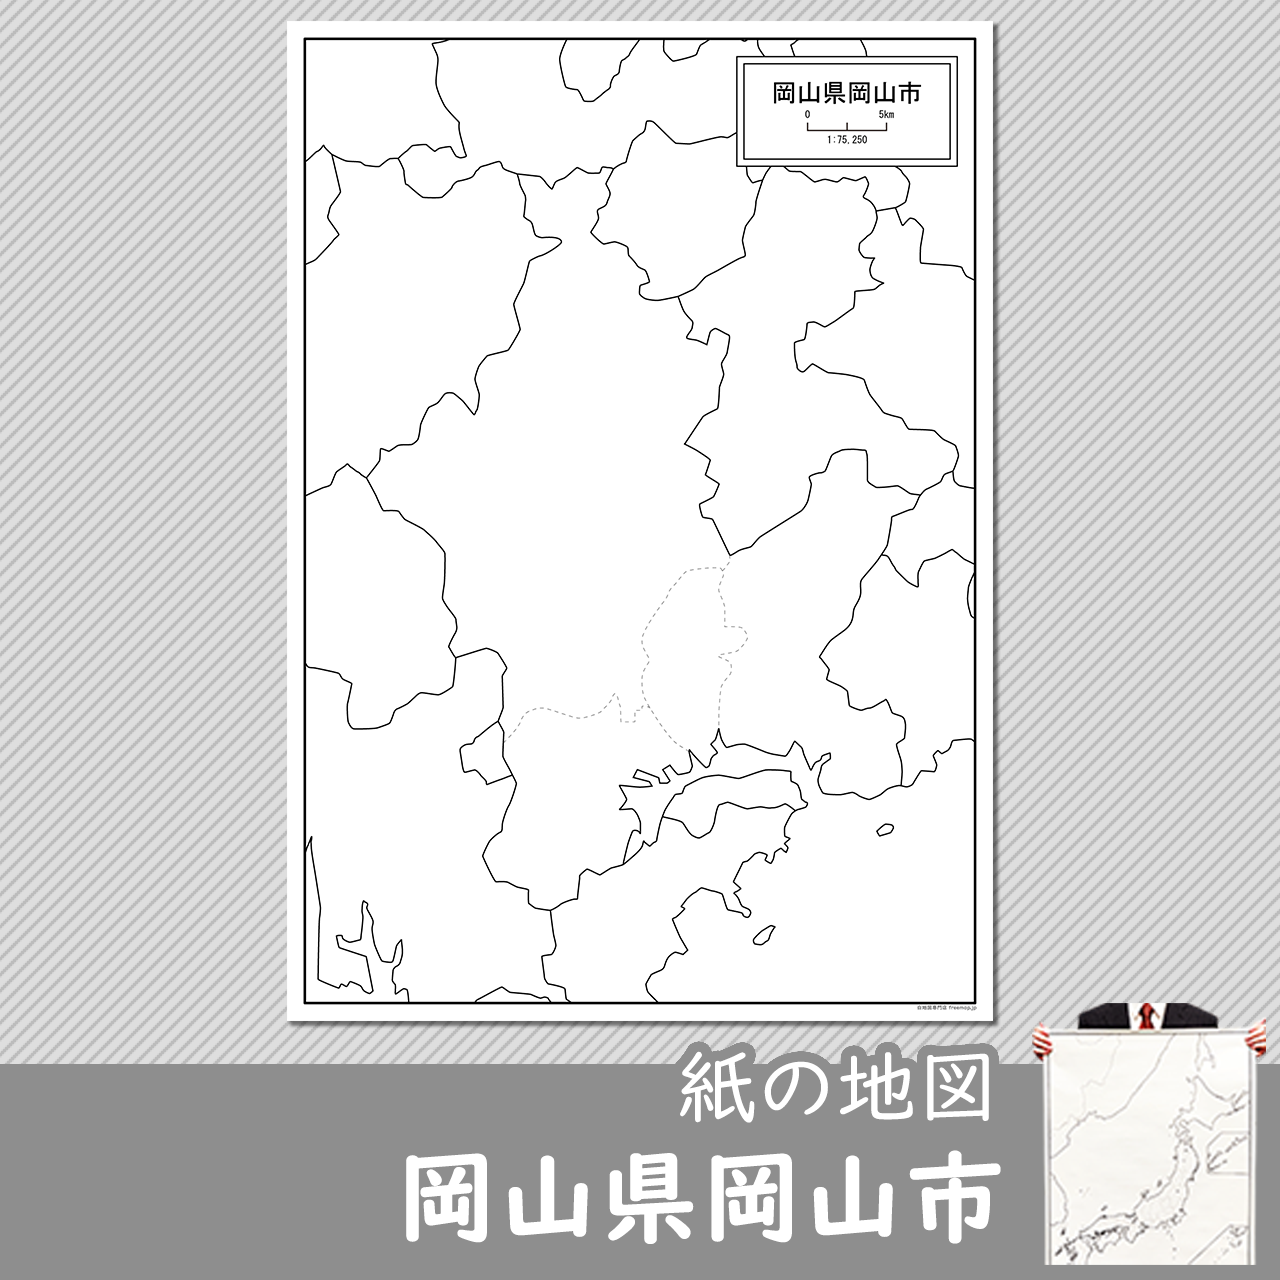 岡山市の紙の白地図のサムネイル